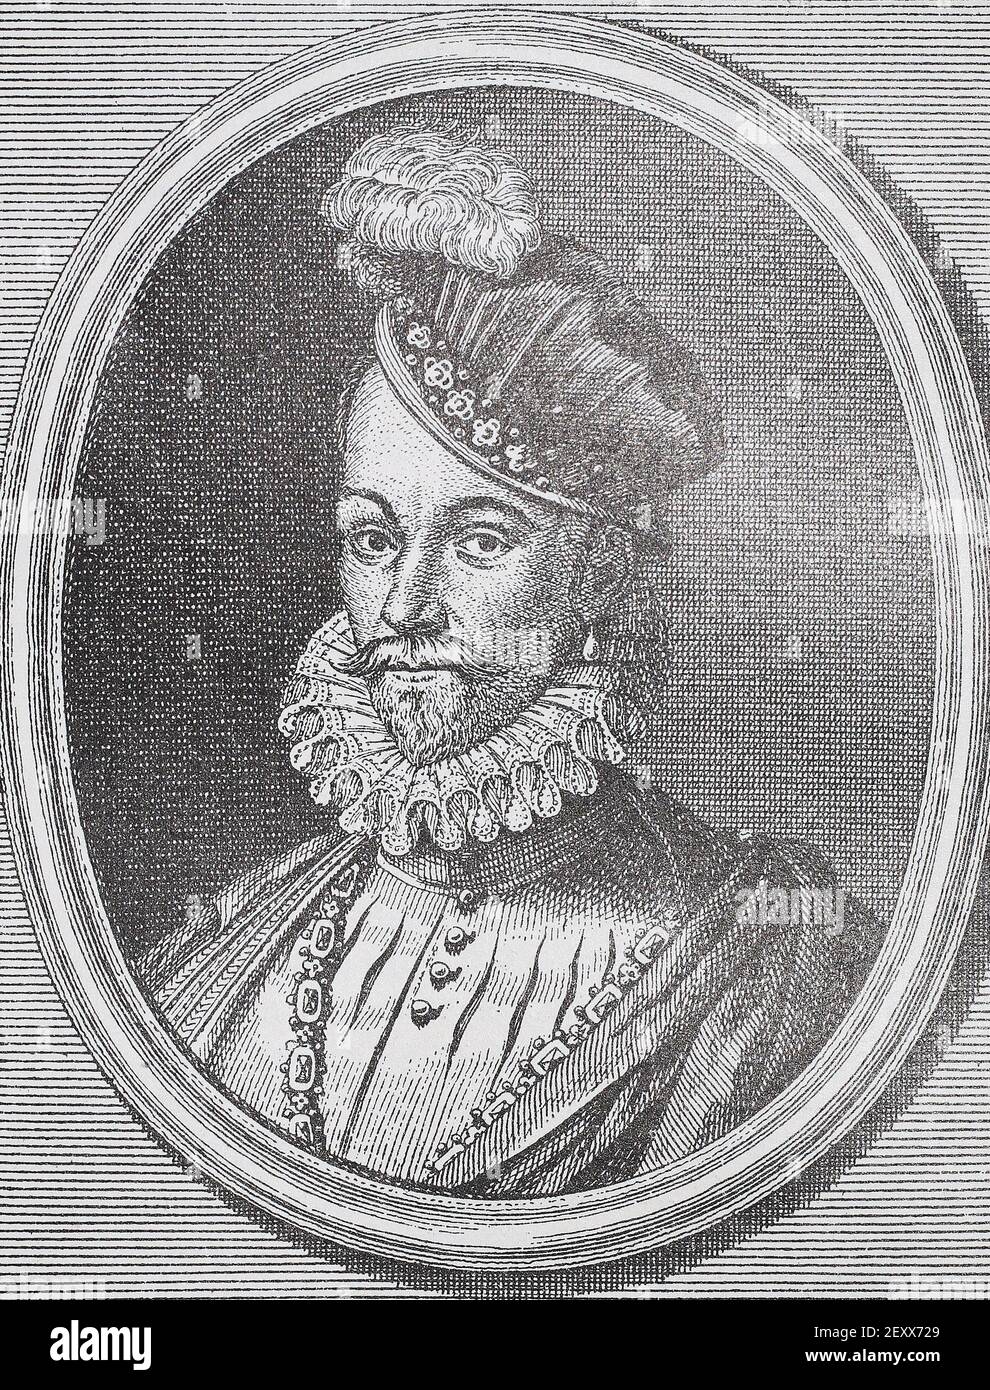 Roi français Charles IX Gravure médiévale. Charles IX (Charles Maximilien; 27 juin 1550 – 30 mai 1574) fut roi de France de 1560 jusqu'à sa mort, en 1574, de la tuberculose. Il monte sur le trône de France à la mort de son frère François II en 1560. Banque D'Images